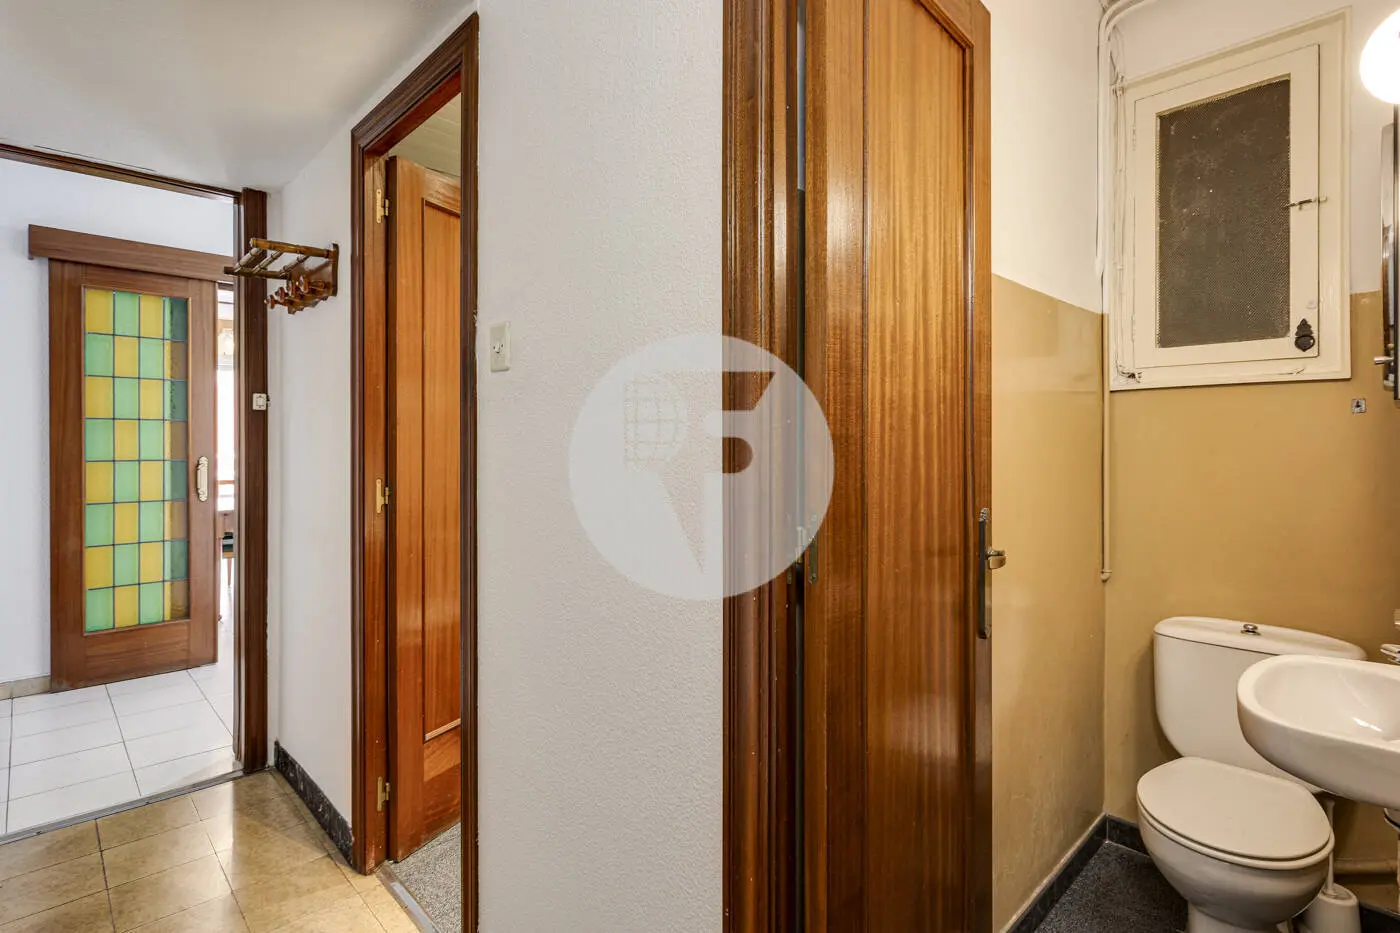 Pis de 3 habitacions ubicat al barri de la Nova Esquerra de l'Eixample de Barcelona. 33